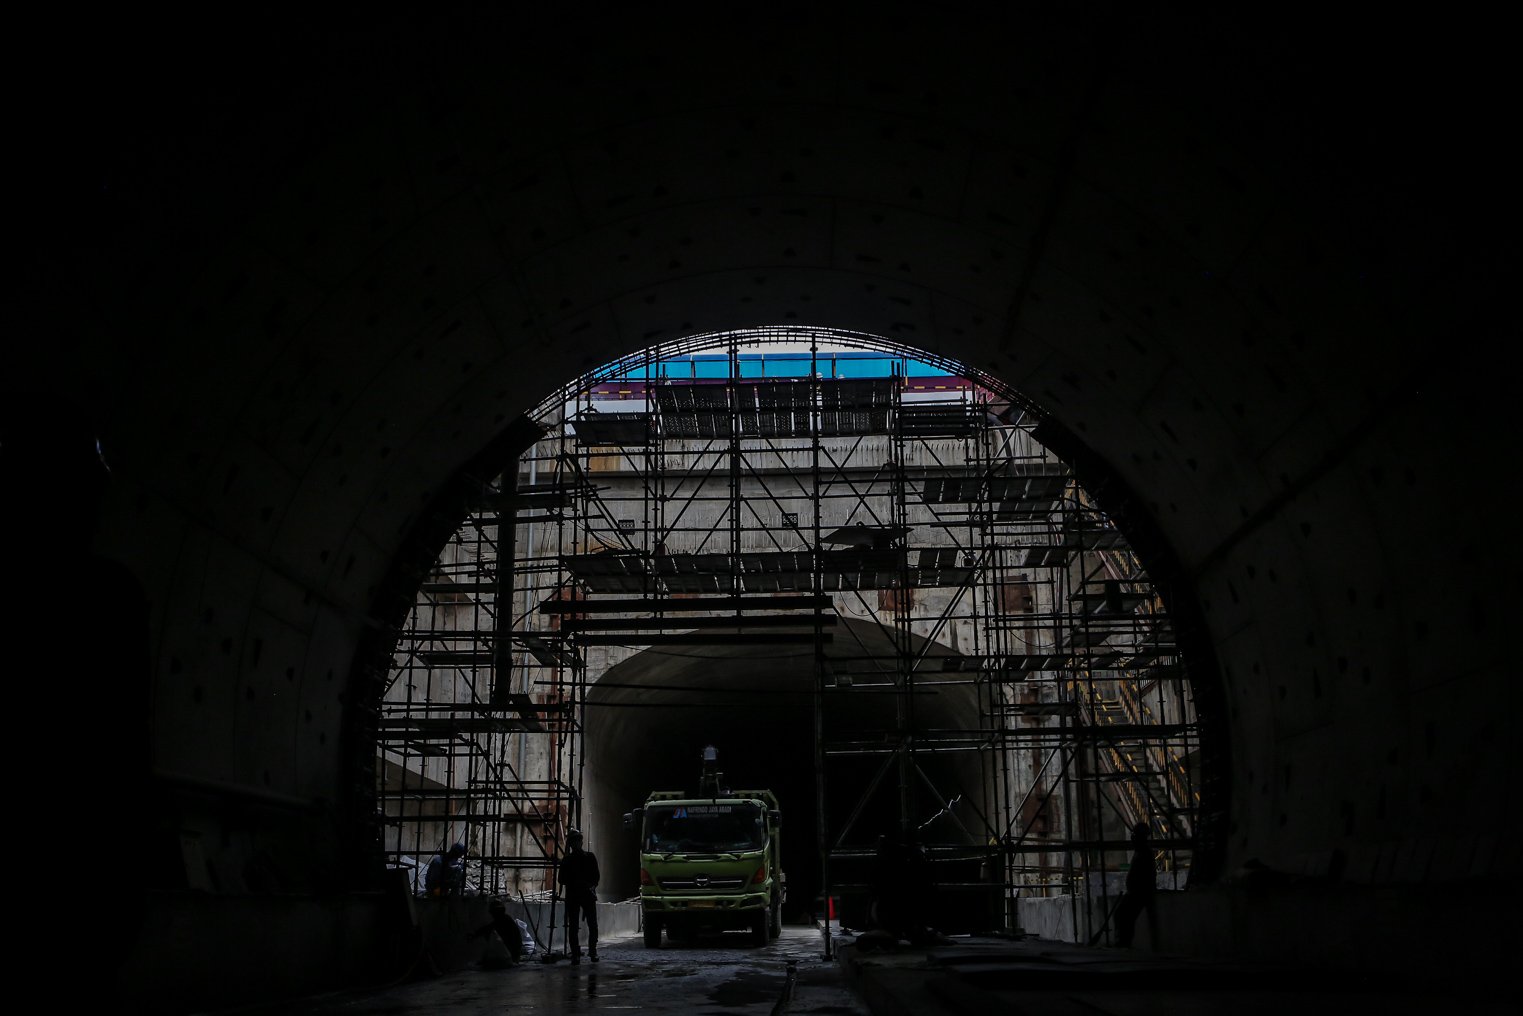 Pekerja mengerjakan proyek Tunnel 1 Halim Kereta Cepat Jakarta Bandung sepanjang 1.885 meter atau 1,8 kilometer yang berlokasi di Jalan Tol Jakarta-Cikampek KM 5+500, Kamis (27/1/2022). Pembangunan proyek Tunnel 1 ini dilakukan menggunakan mesin bor atau Tunnel Boring Machine (TBM) mesin bor pembuat terowongan yang didatangkan langsung dari negeri China, untuk membuat struktur Tunnel 1 Kereta Cepat Jakarta Bandung. TBM yang digunakan memiliki diameter 13,23 meter dengan panjang 102,3 meter, berat 2.600 ton 